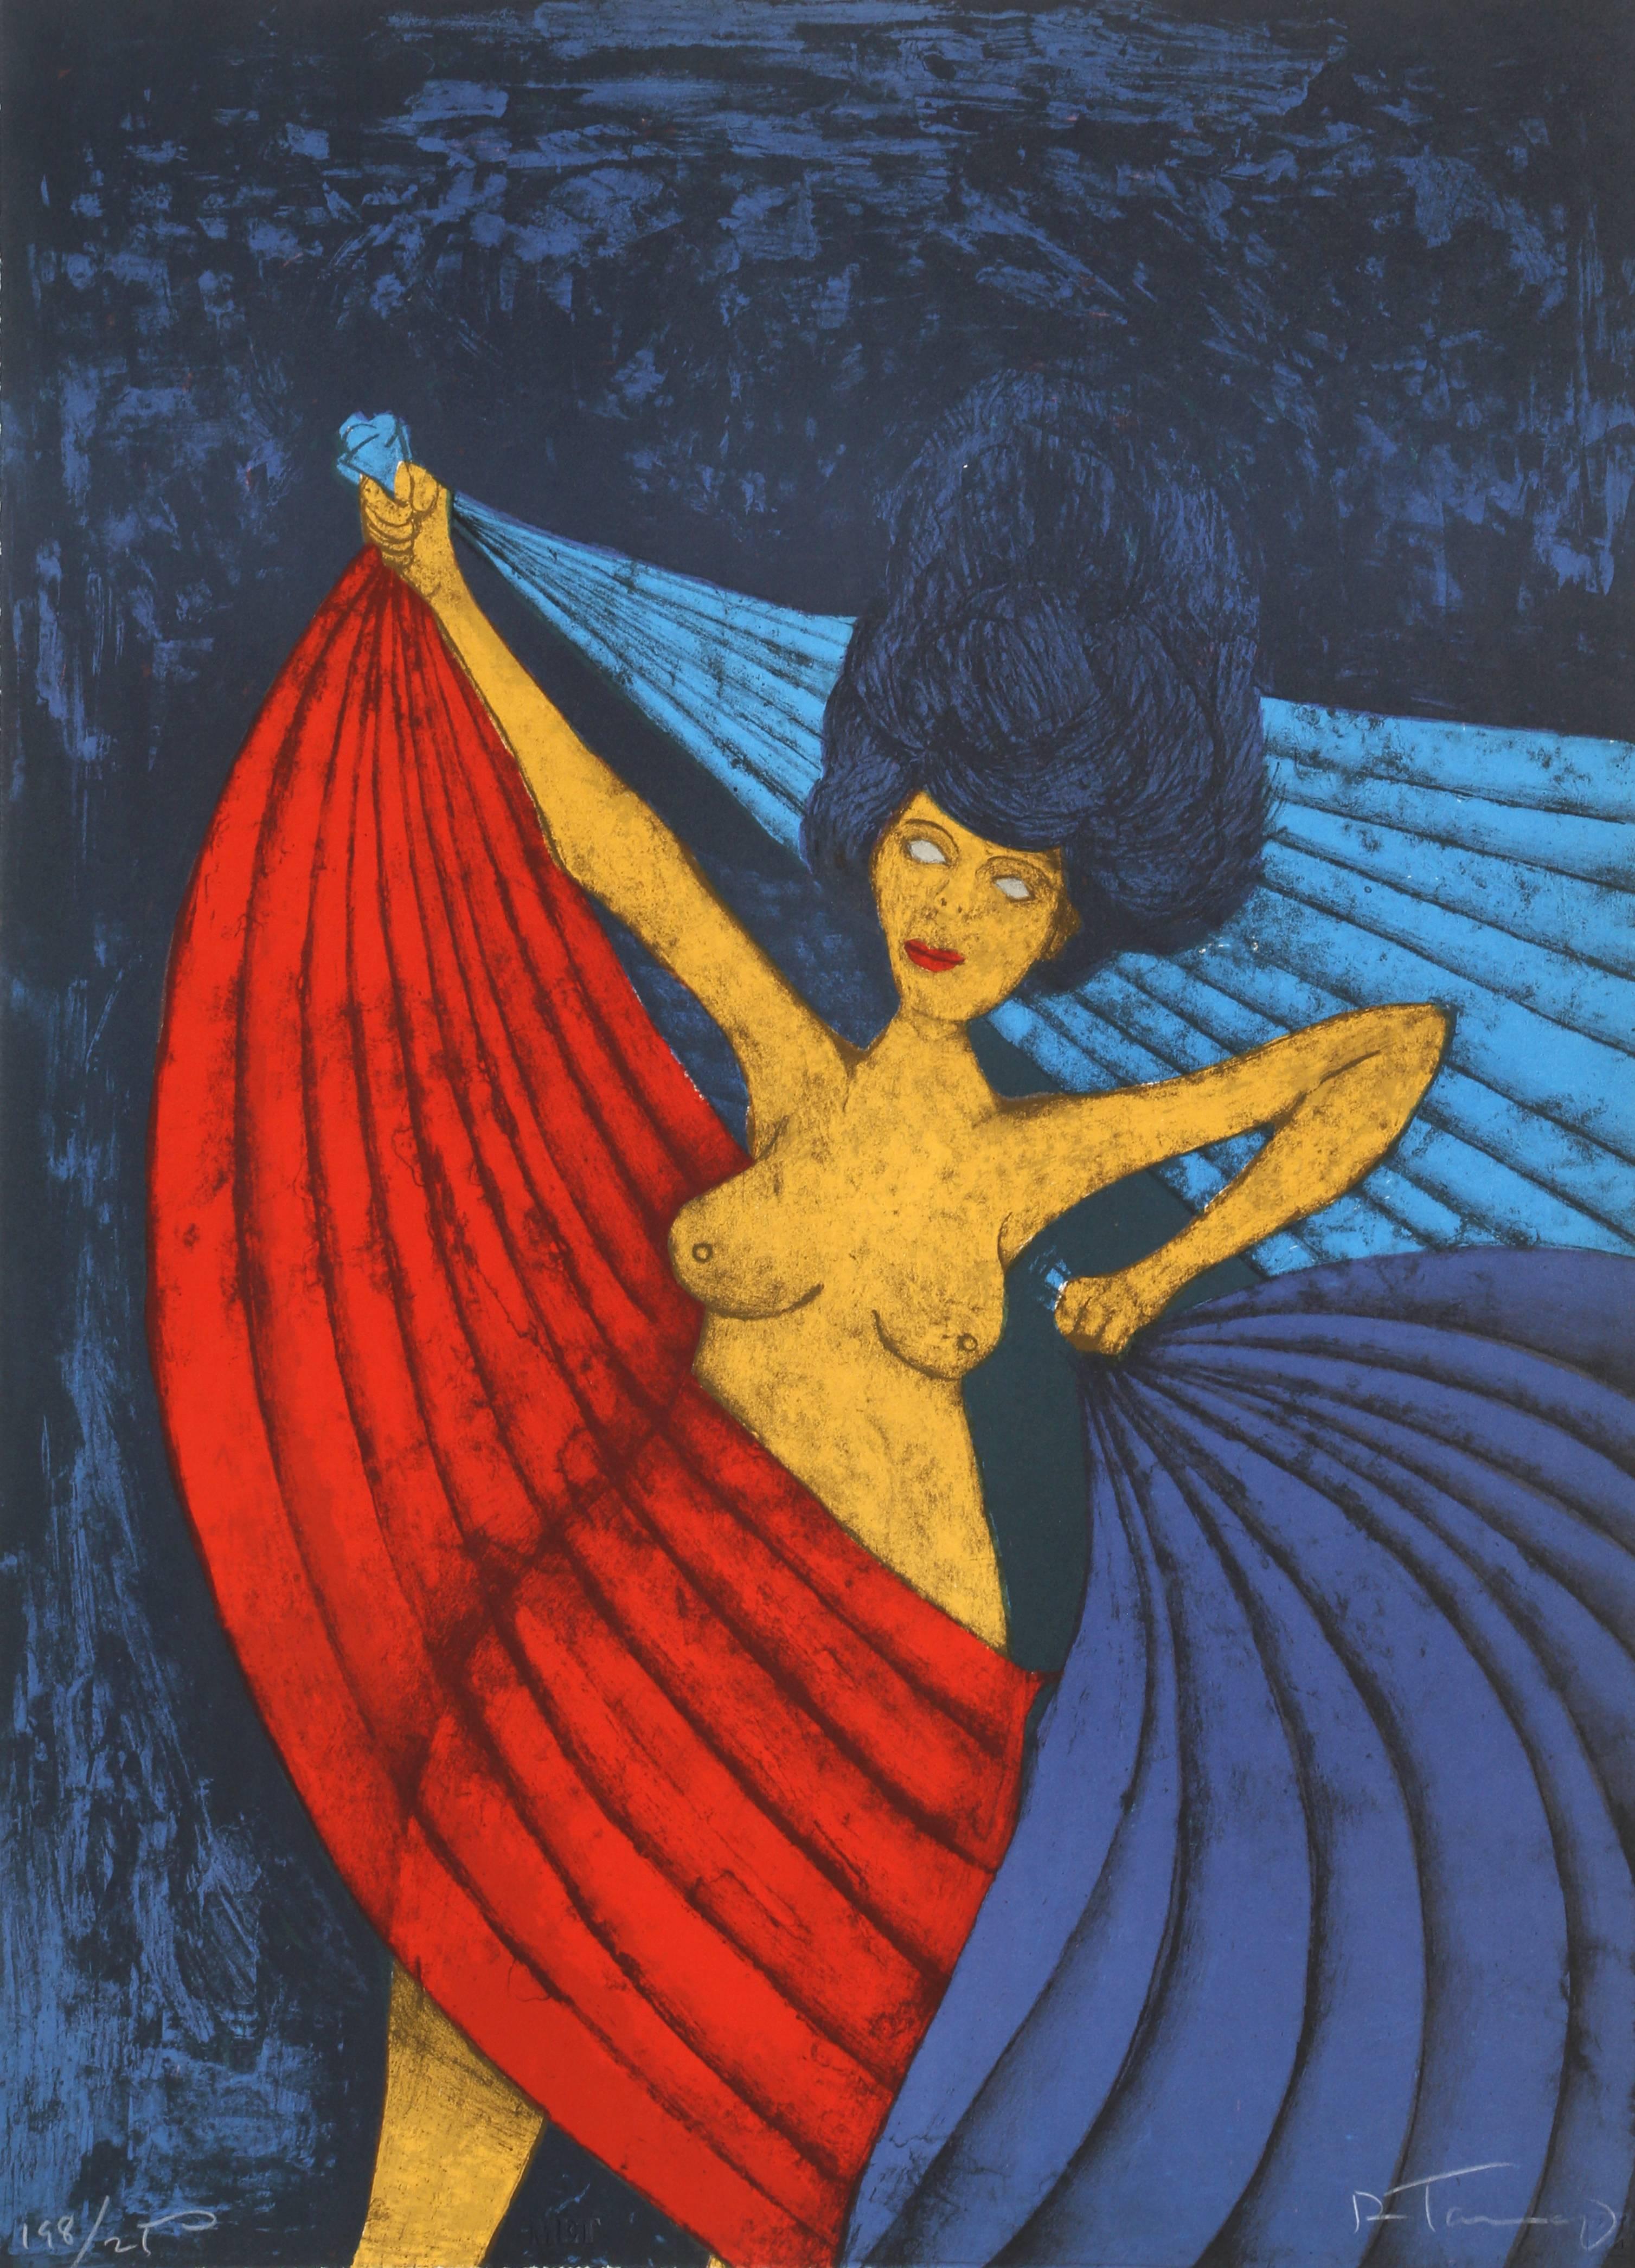 Künstler: Rufino Tamayo (Mexikaner, 1899-1991)
Titel: Salome
Jahr: 1983
Medium: Farblithographie, signiert und nummeriert mit Bleistift
Auflage: 250, 10 AP, 5 HC
Größe: 30  x 22 in. (76.2  x 55,88 cm)

Aus dem Metropolitan Opera Fine Art II